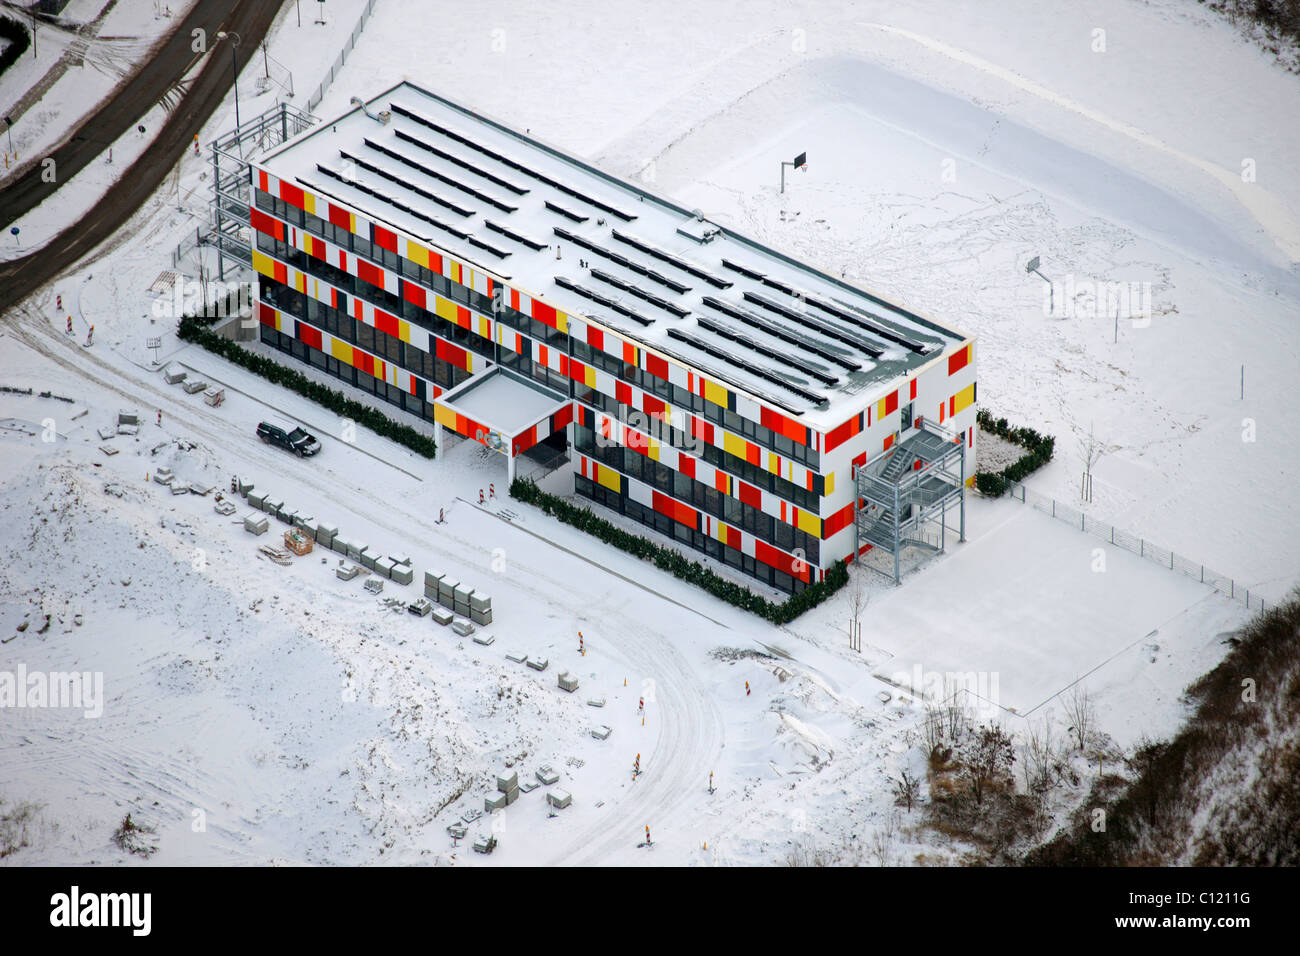 Vue aérienne, parc industriel, immeubles de bureaux, de toiture solaire, Stadtkrone-Ost parc industriel dans la neige, la région de la Ruhr Banque D'Images